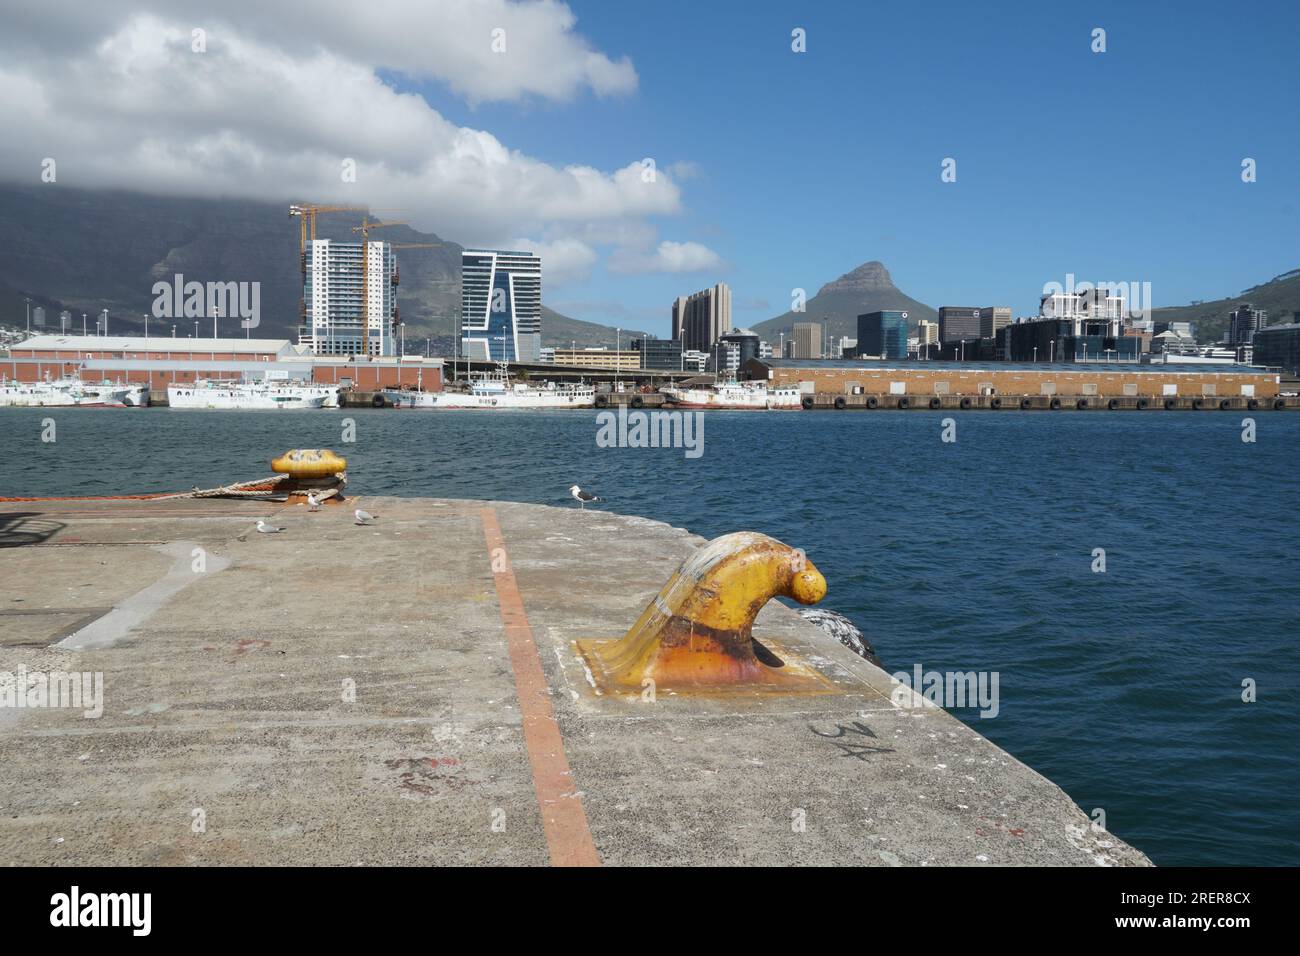 Paysage urbain du Cap avec des bâtiments modernes élevés vus de la jetée avec des bornes jaunes. Banque D'Images